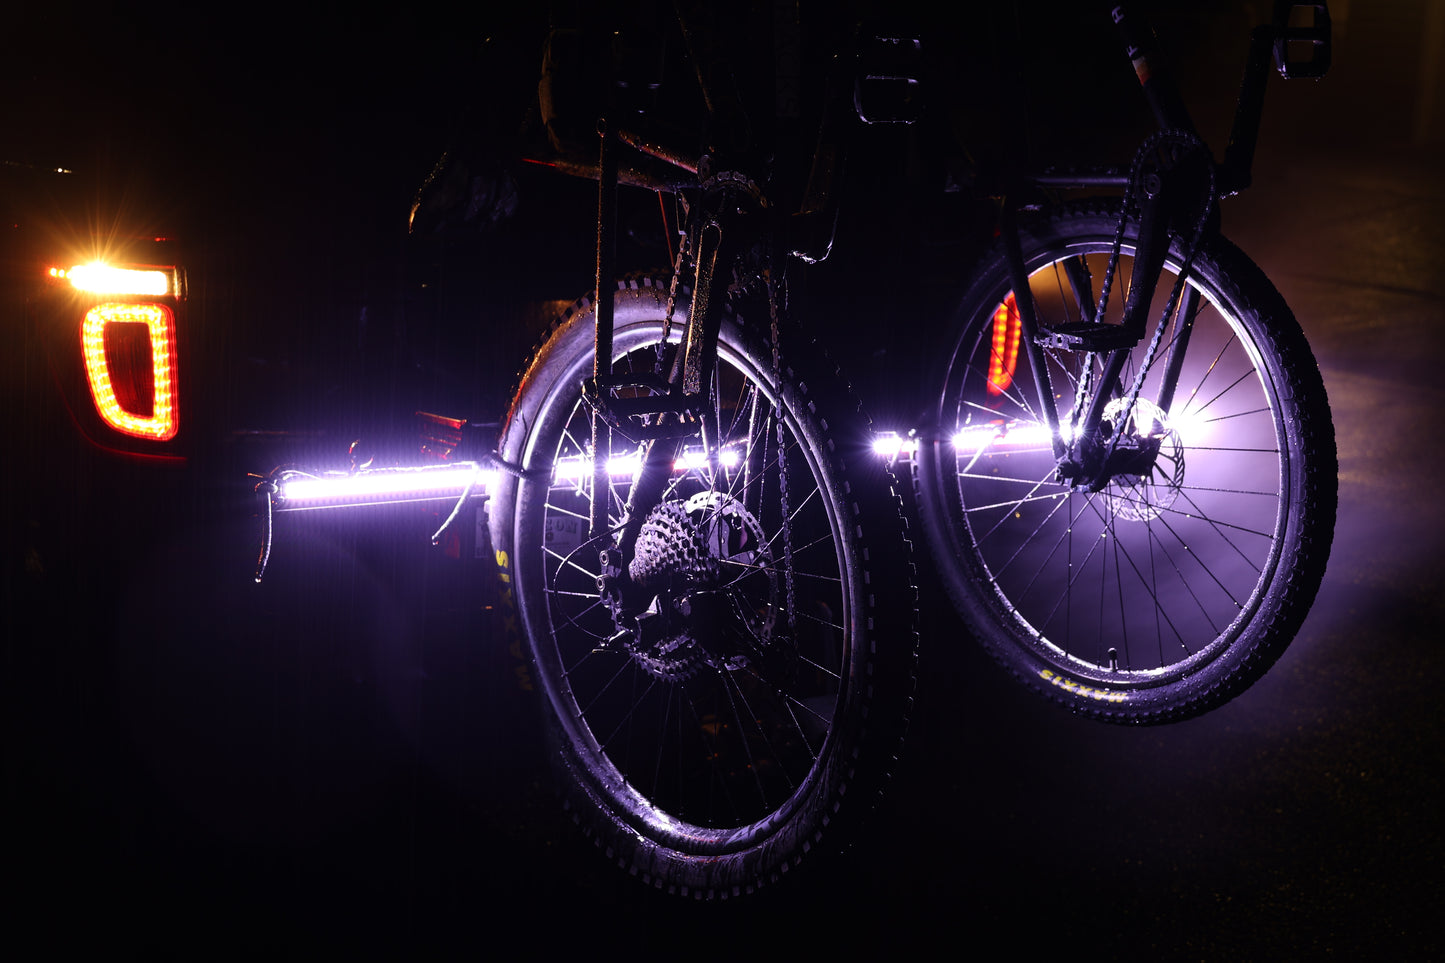 reverse/back up led lightbar light for bike rack safety